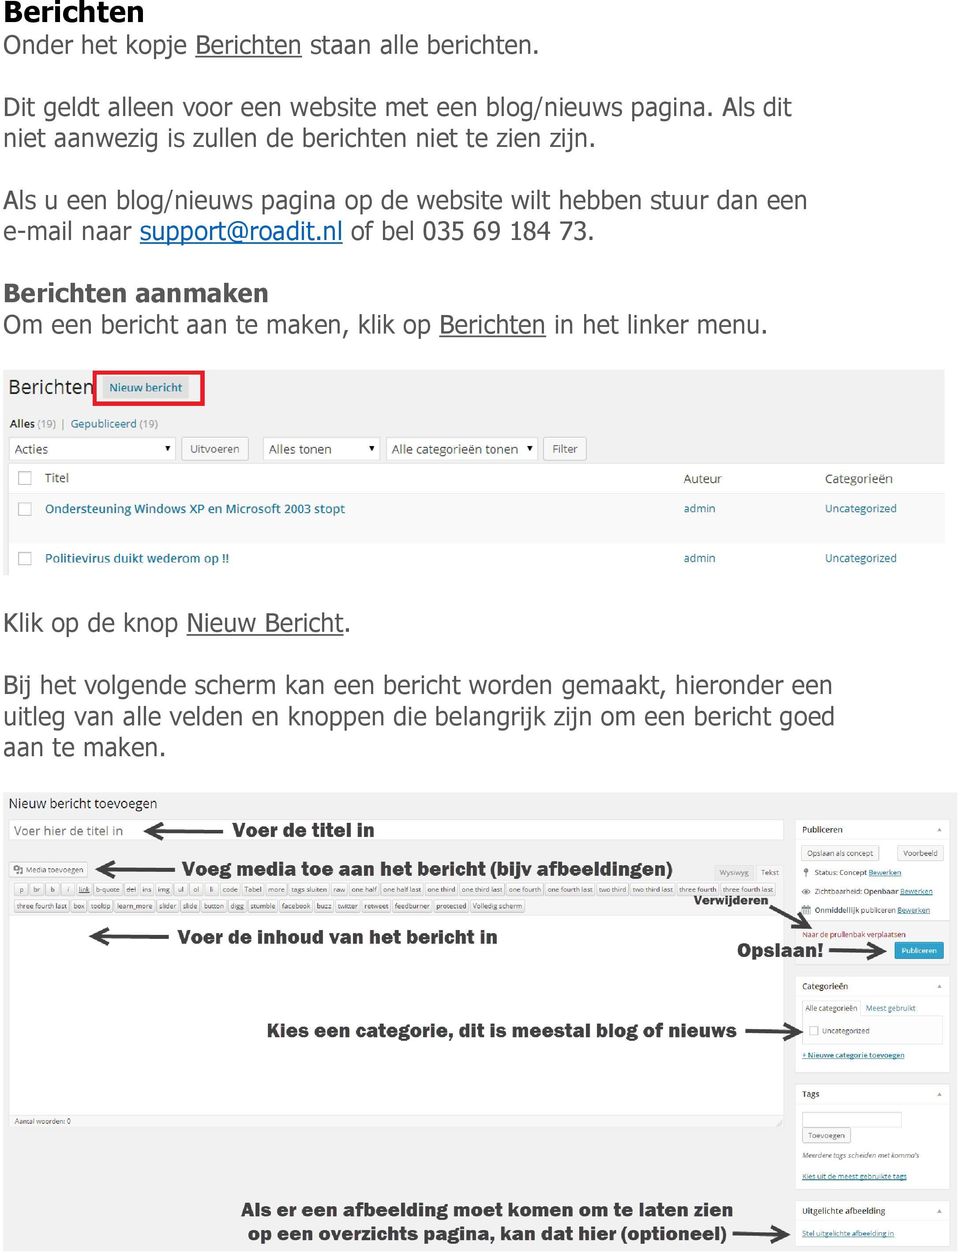 Als u een blog/nieuws pagina op de website wilt hebben stuur dan een e-mail naar support@roadit.nl of bel 035 69 184 73.